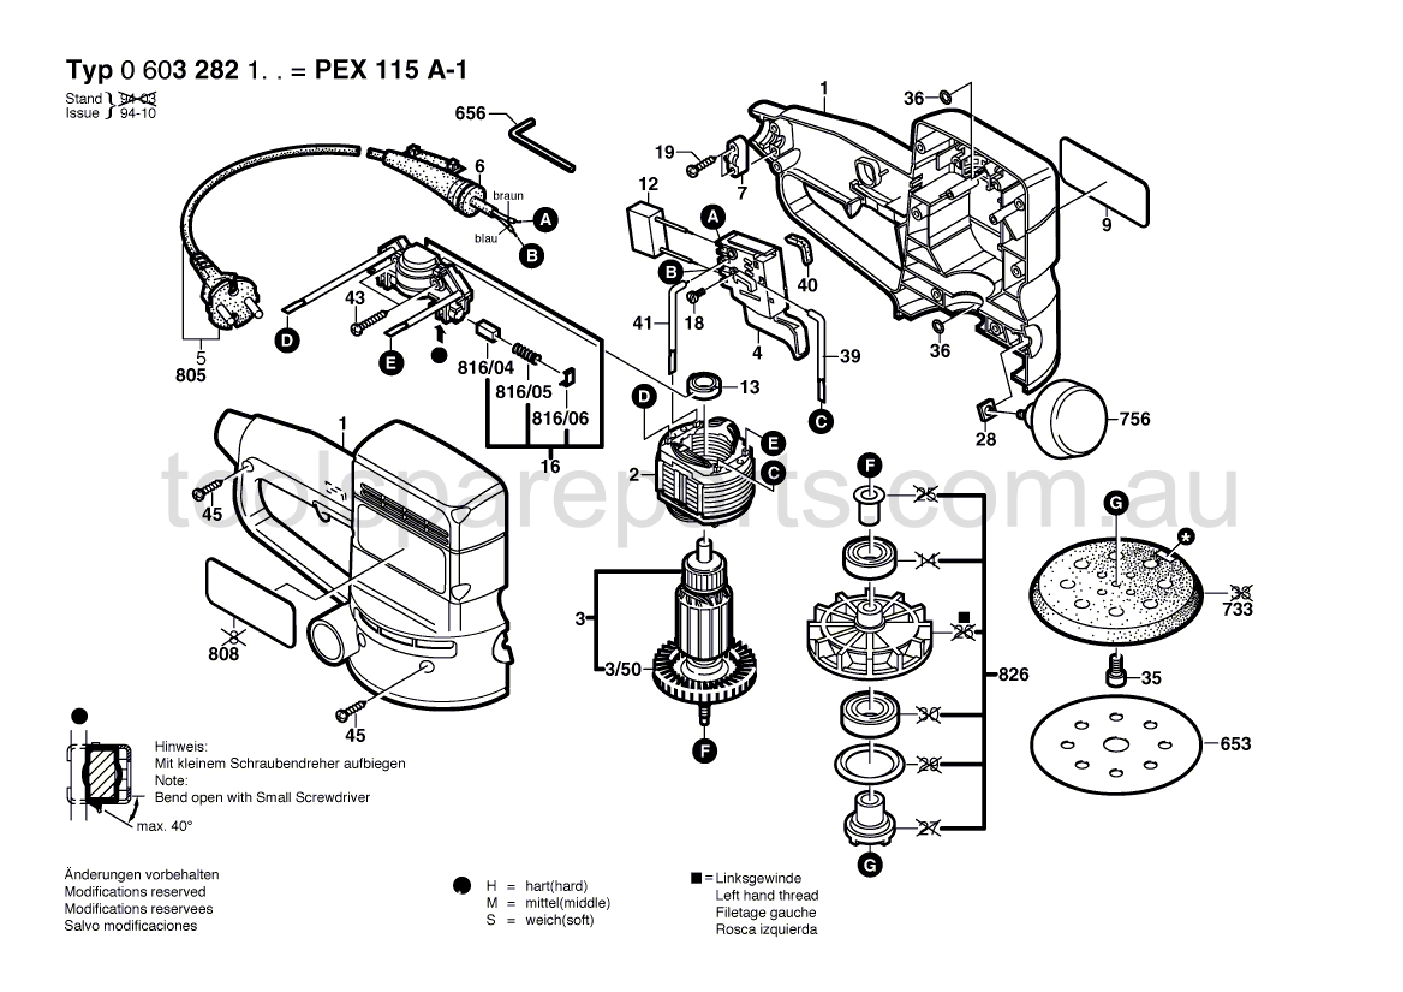 Bosch PEX 115 A-1 0603282137  Diagram 1